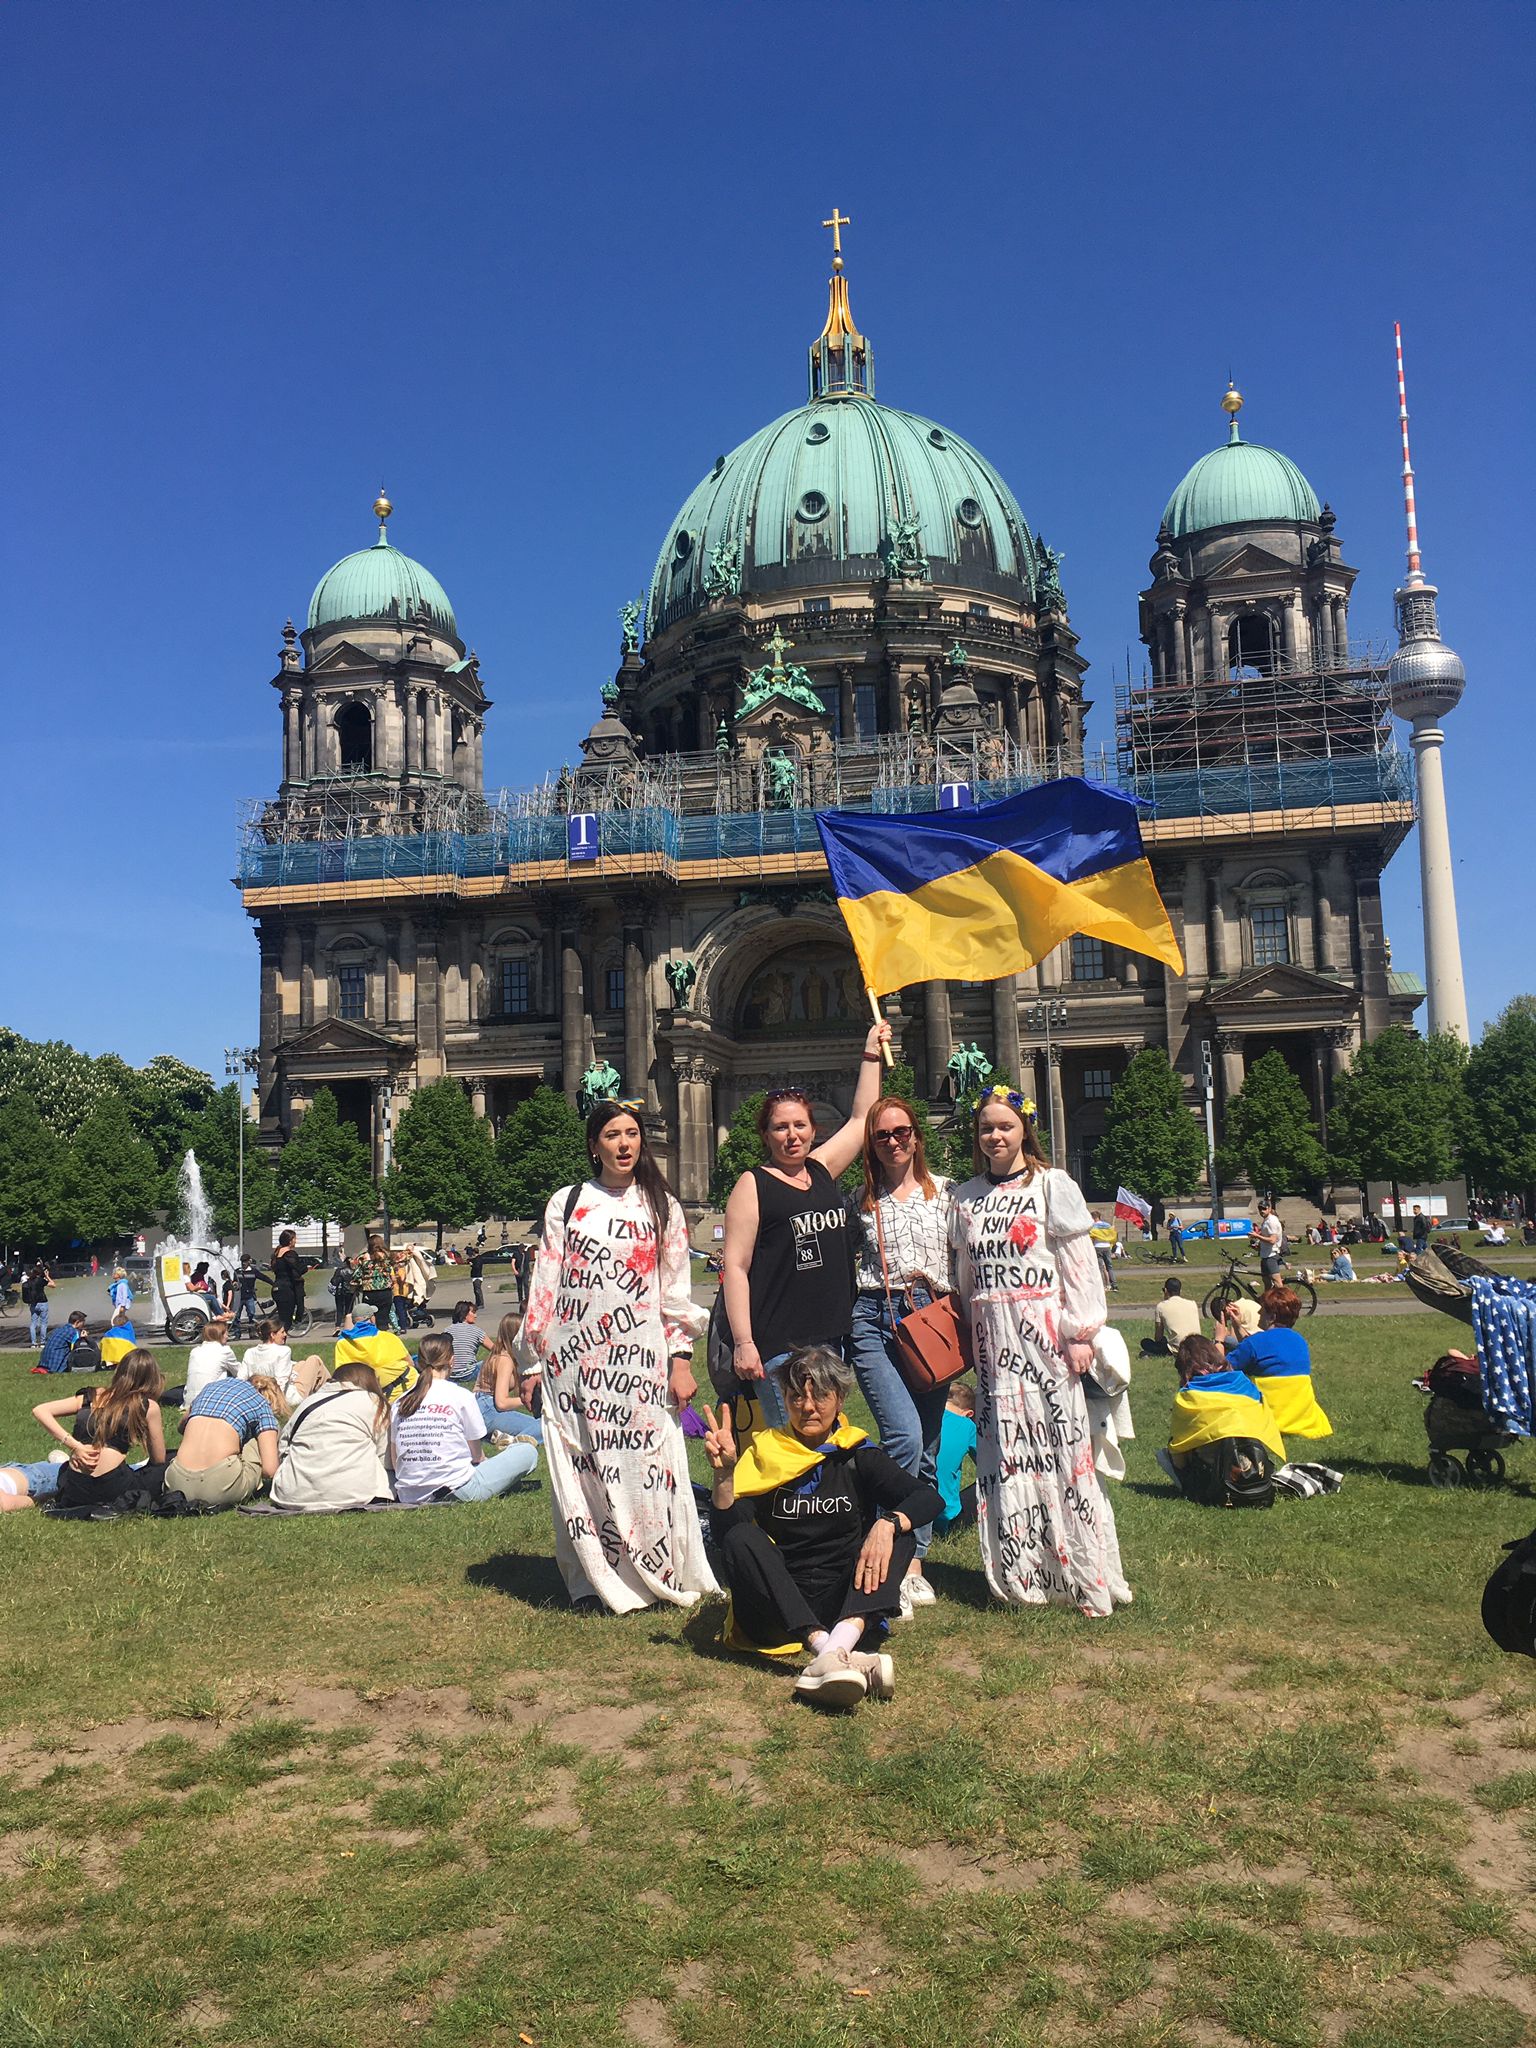 Ukrainian women on Victory Day in Berlin, May 8, 2022, photo by A. Szczęśniak